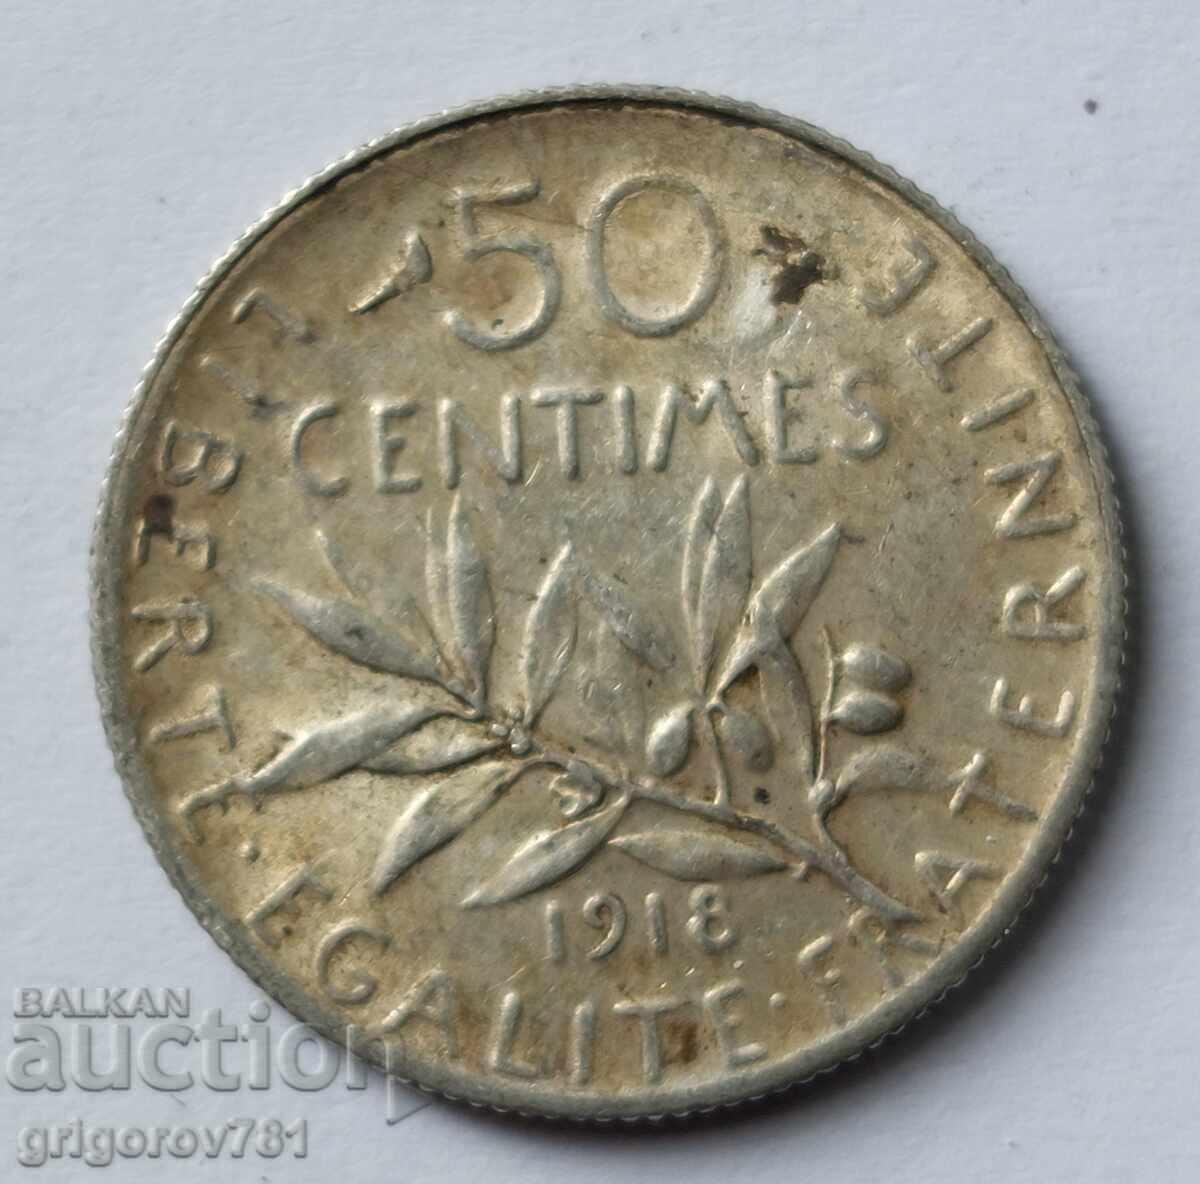 Ασημένιο 50 εκατοστά Γαλλία 1918 - ασημένιο νόμισμα №23